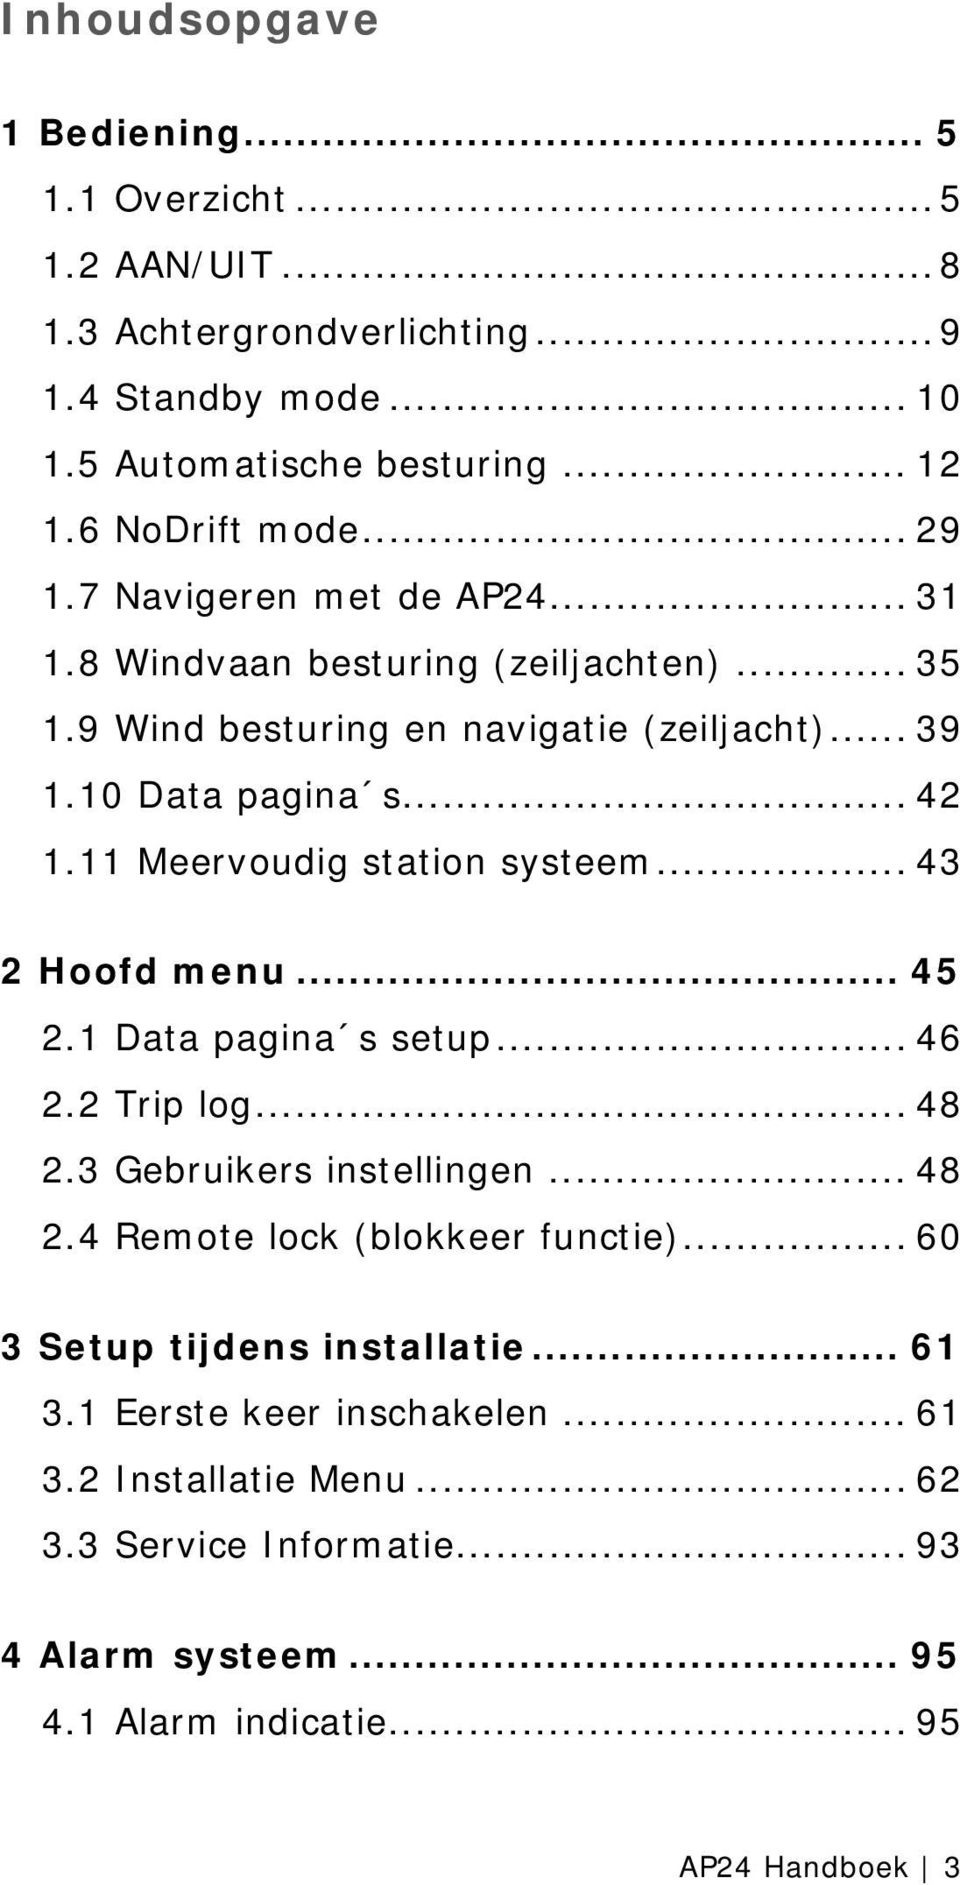 11 Meervoudig station systeem... 43 2 Hoofd menu... 45 2.1 Data pagina s setup... 46 2.2 Trip log... 48 2.3 Gebruikers instellingen... 48 2.4 Remote lock (blokkeer functie).